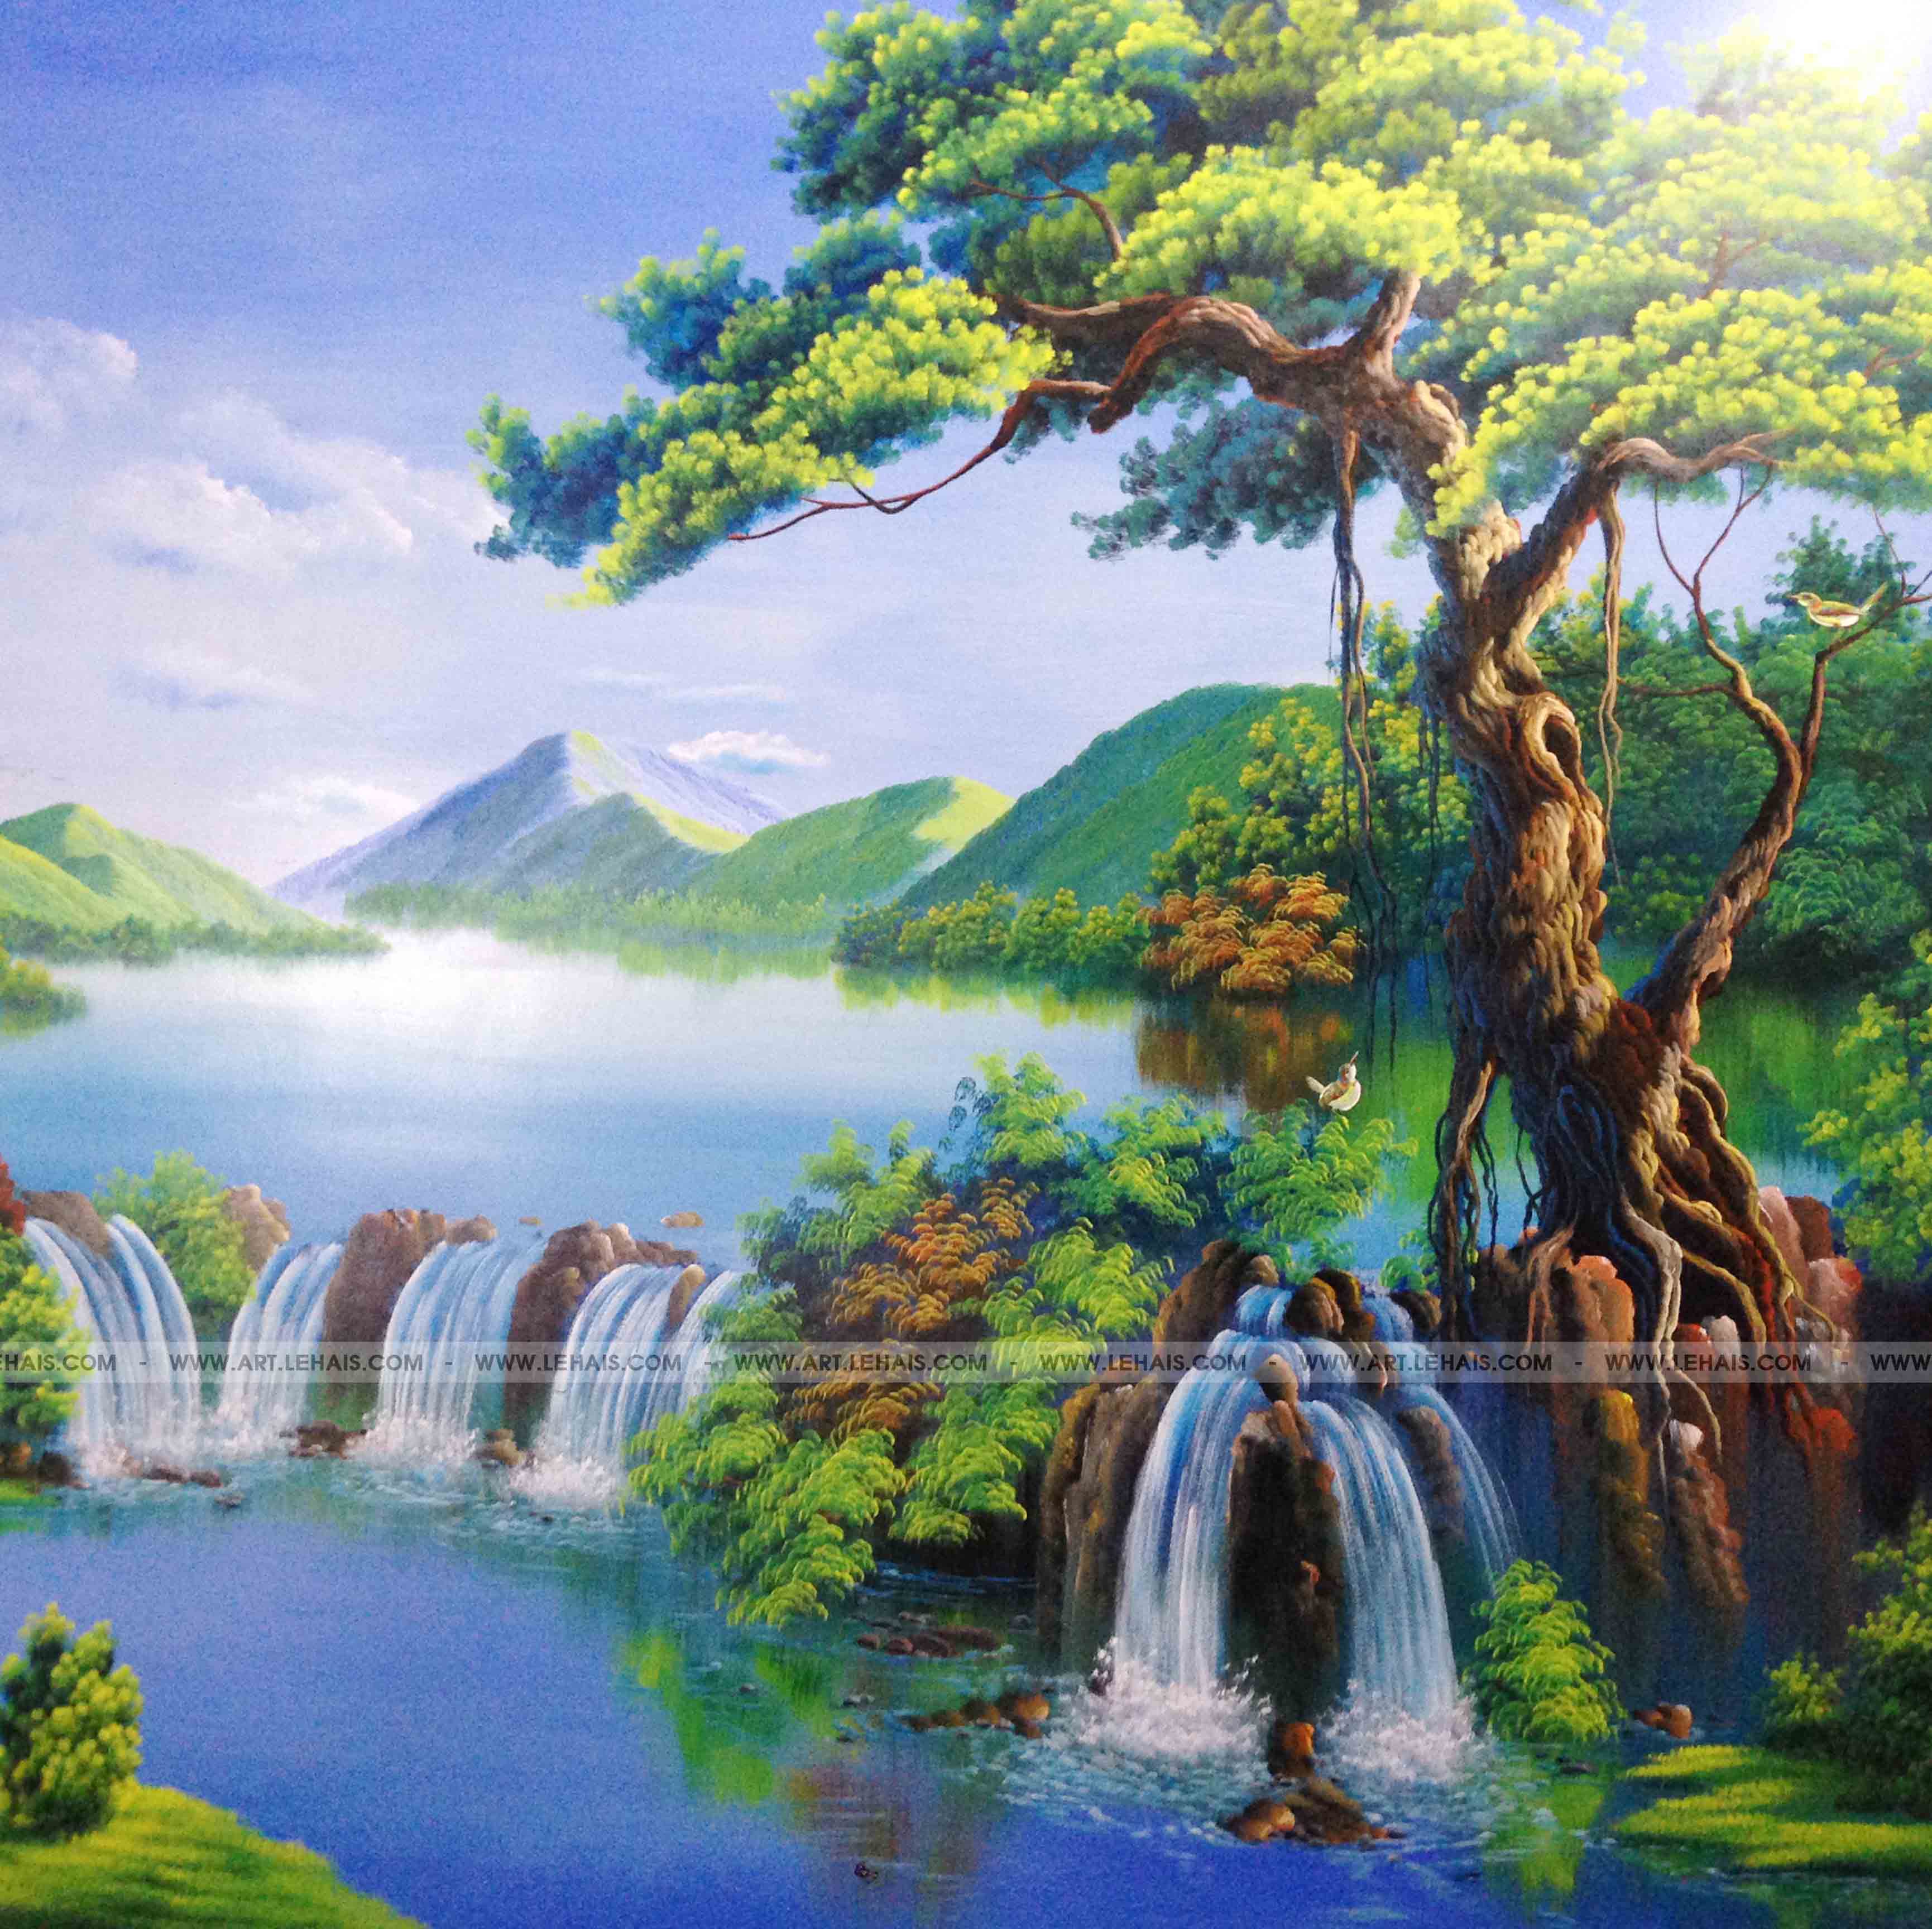 Vẽ tranh 3D phong cảnh tại gia đình ở Như Xuân, Thanh Hóa - TT57LHAR